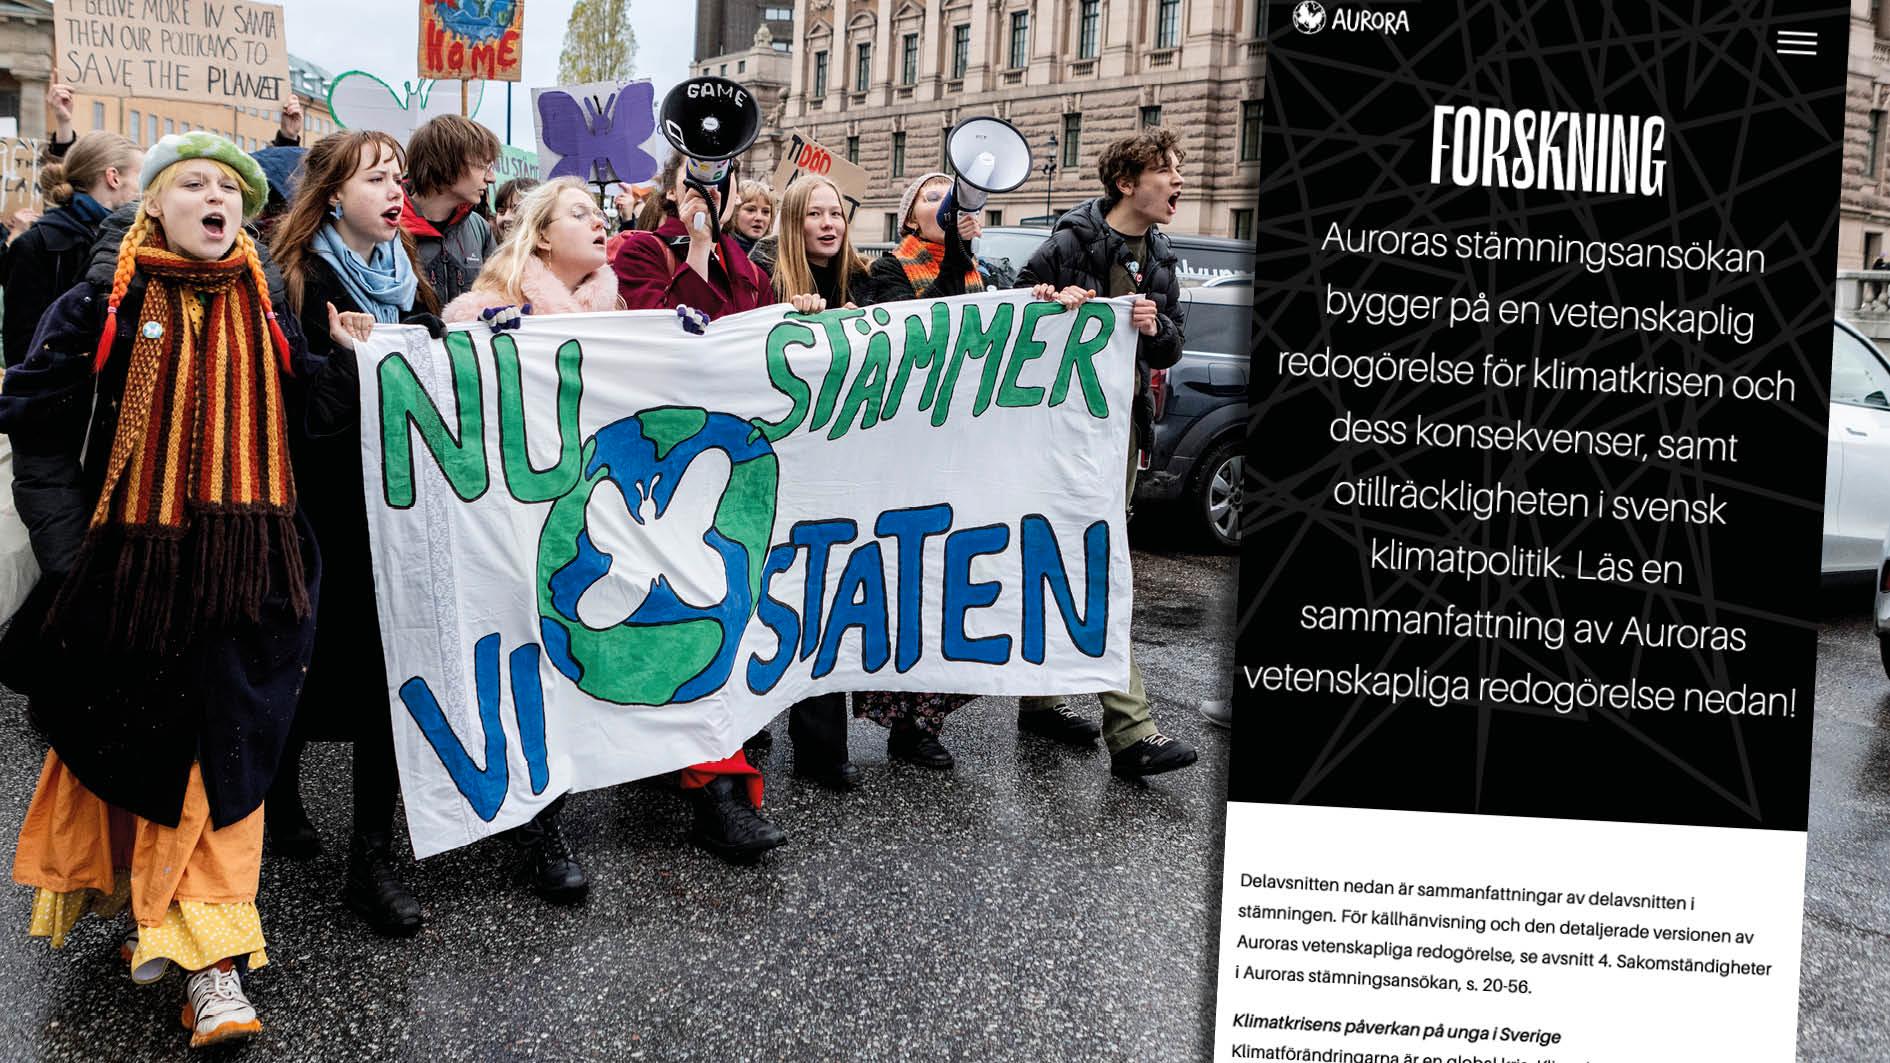 Den 25 november lämnade ungdomsorganisationen Aurora in en stämningsansökan mot svenska staten för bristande klimatpolitik. Sverige vidtar inte de åtgärder som krävs för att skydda barns och ungdomars rättigheter enligt Europakonventionen om de mänskliga rättigheterna. Därför ställer vi oss bakom stämningen, skriver 1 620 forskare och anställda i forskarvärlden. 